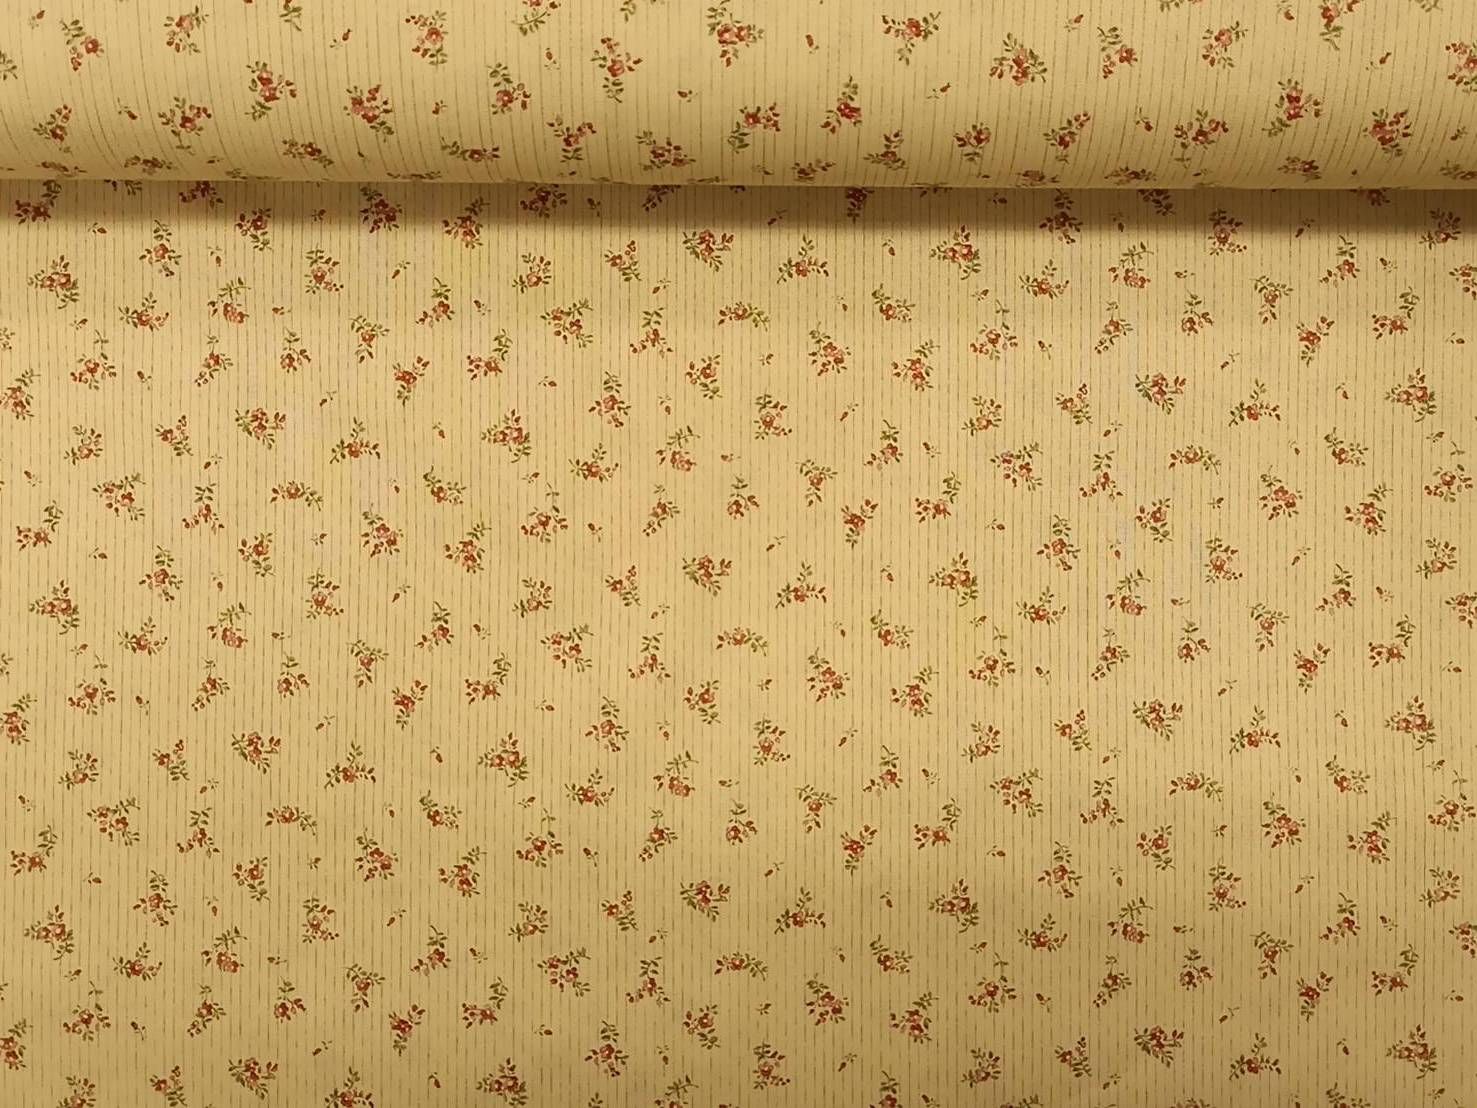 日本進口極度舒適輕柔60支薄綿布-條紋花佃-黃底-100%純綿、日本製造